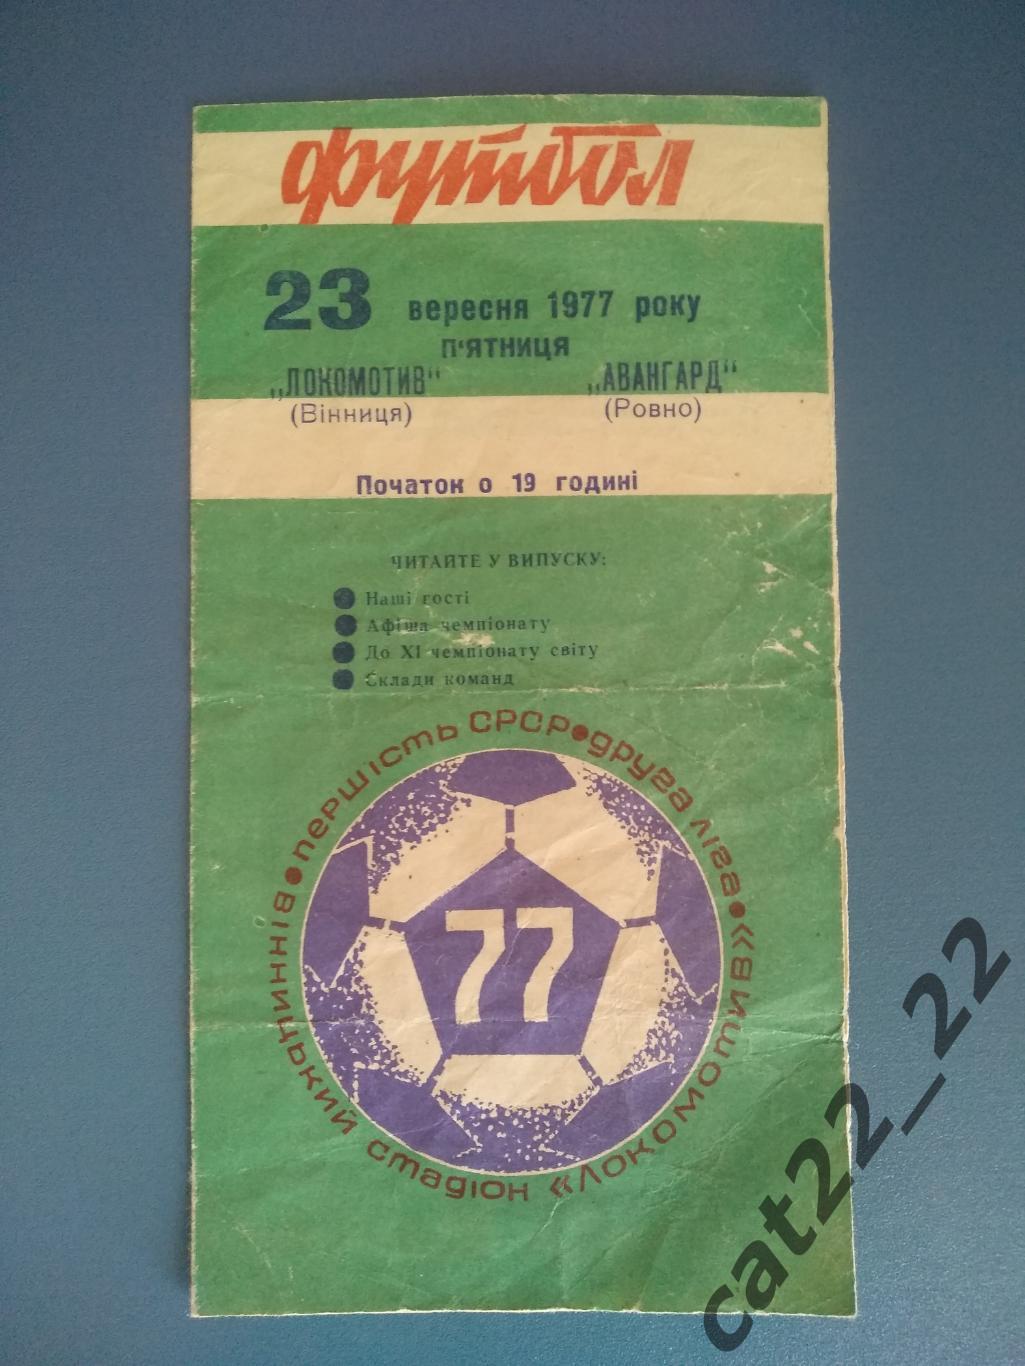 Локомотив Винница - Авангард Ровно 1977